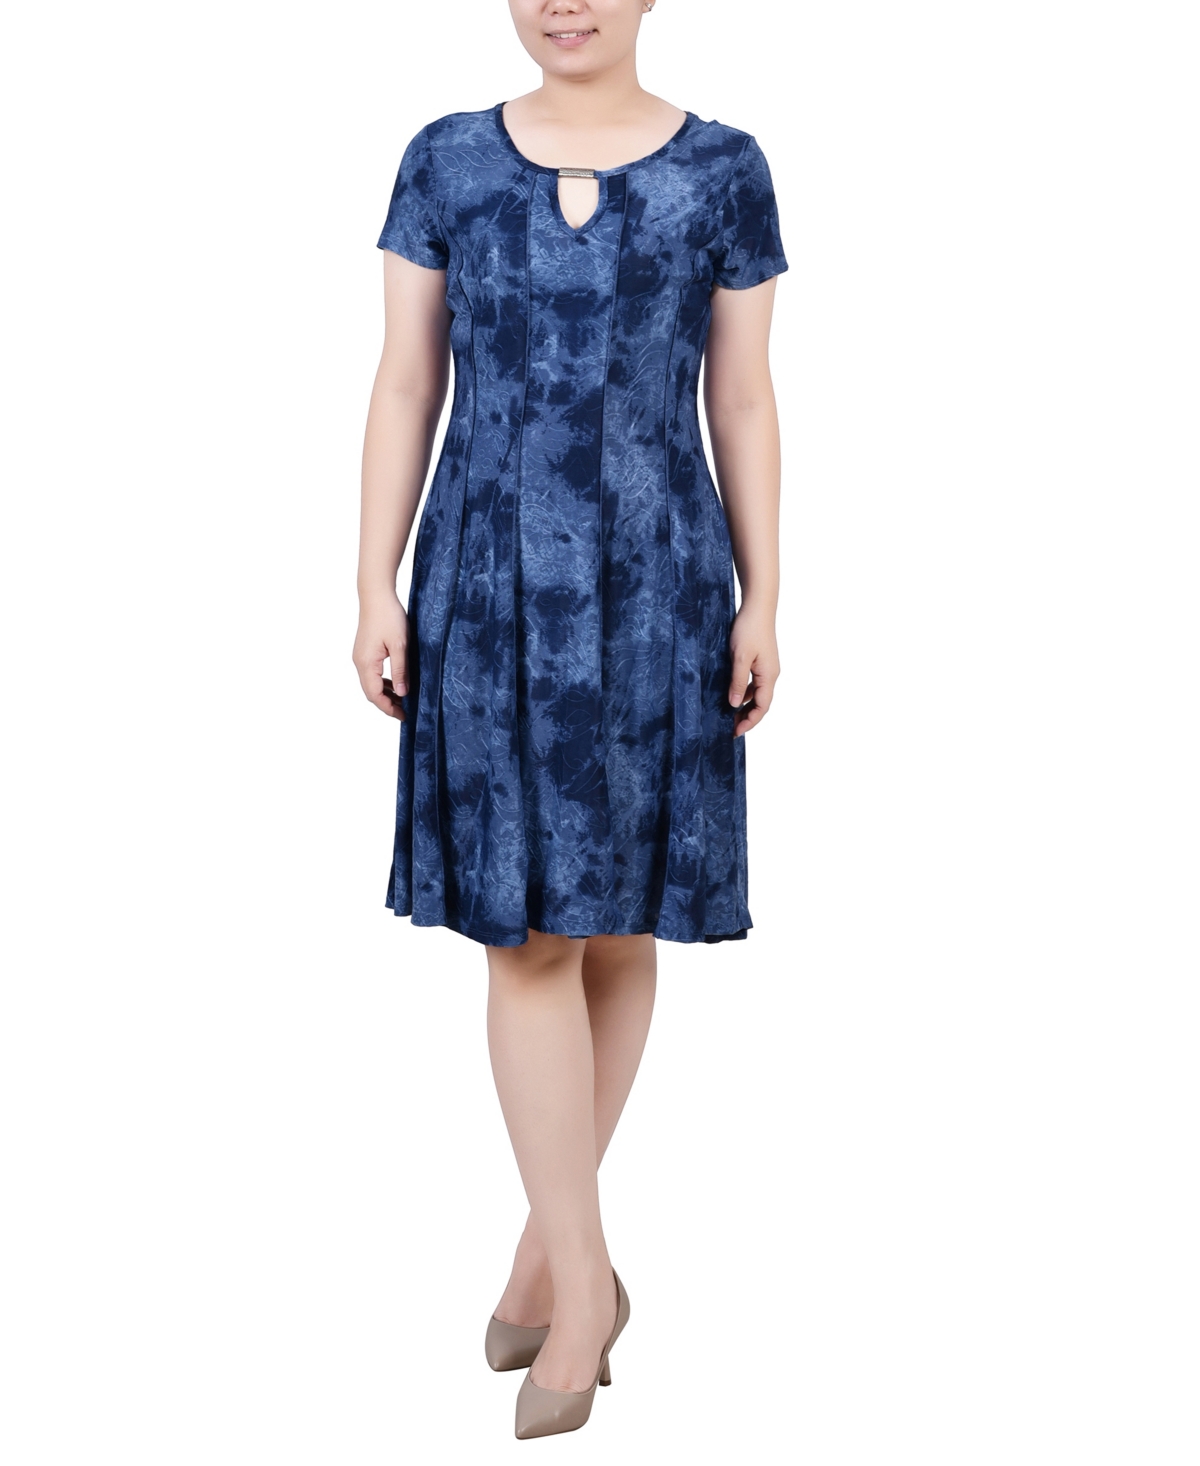 Women's Short Sleeve Jacquard Knit Seamed Dress - Denim Tie Dye